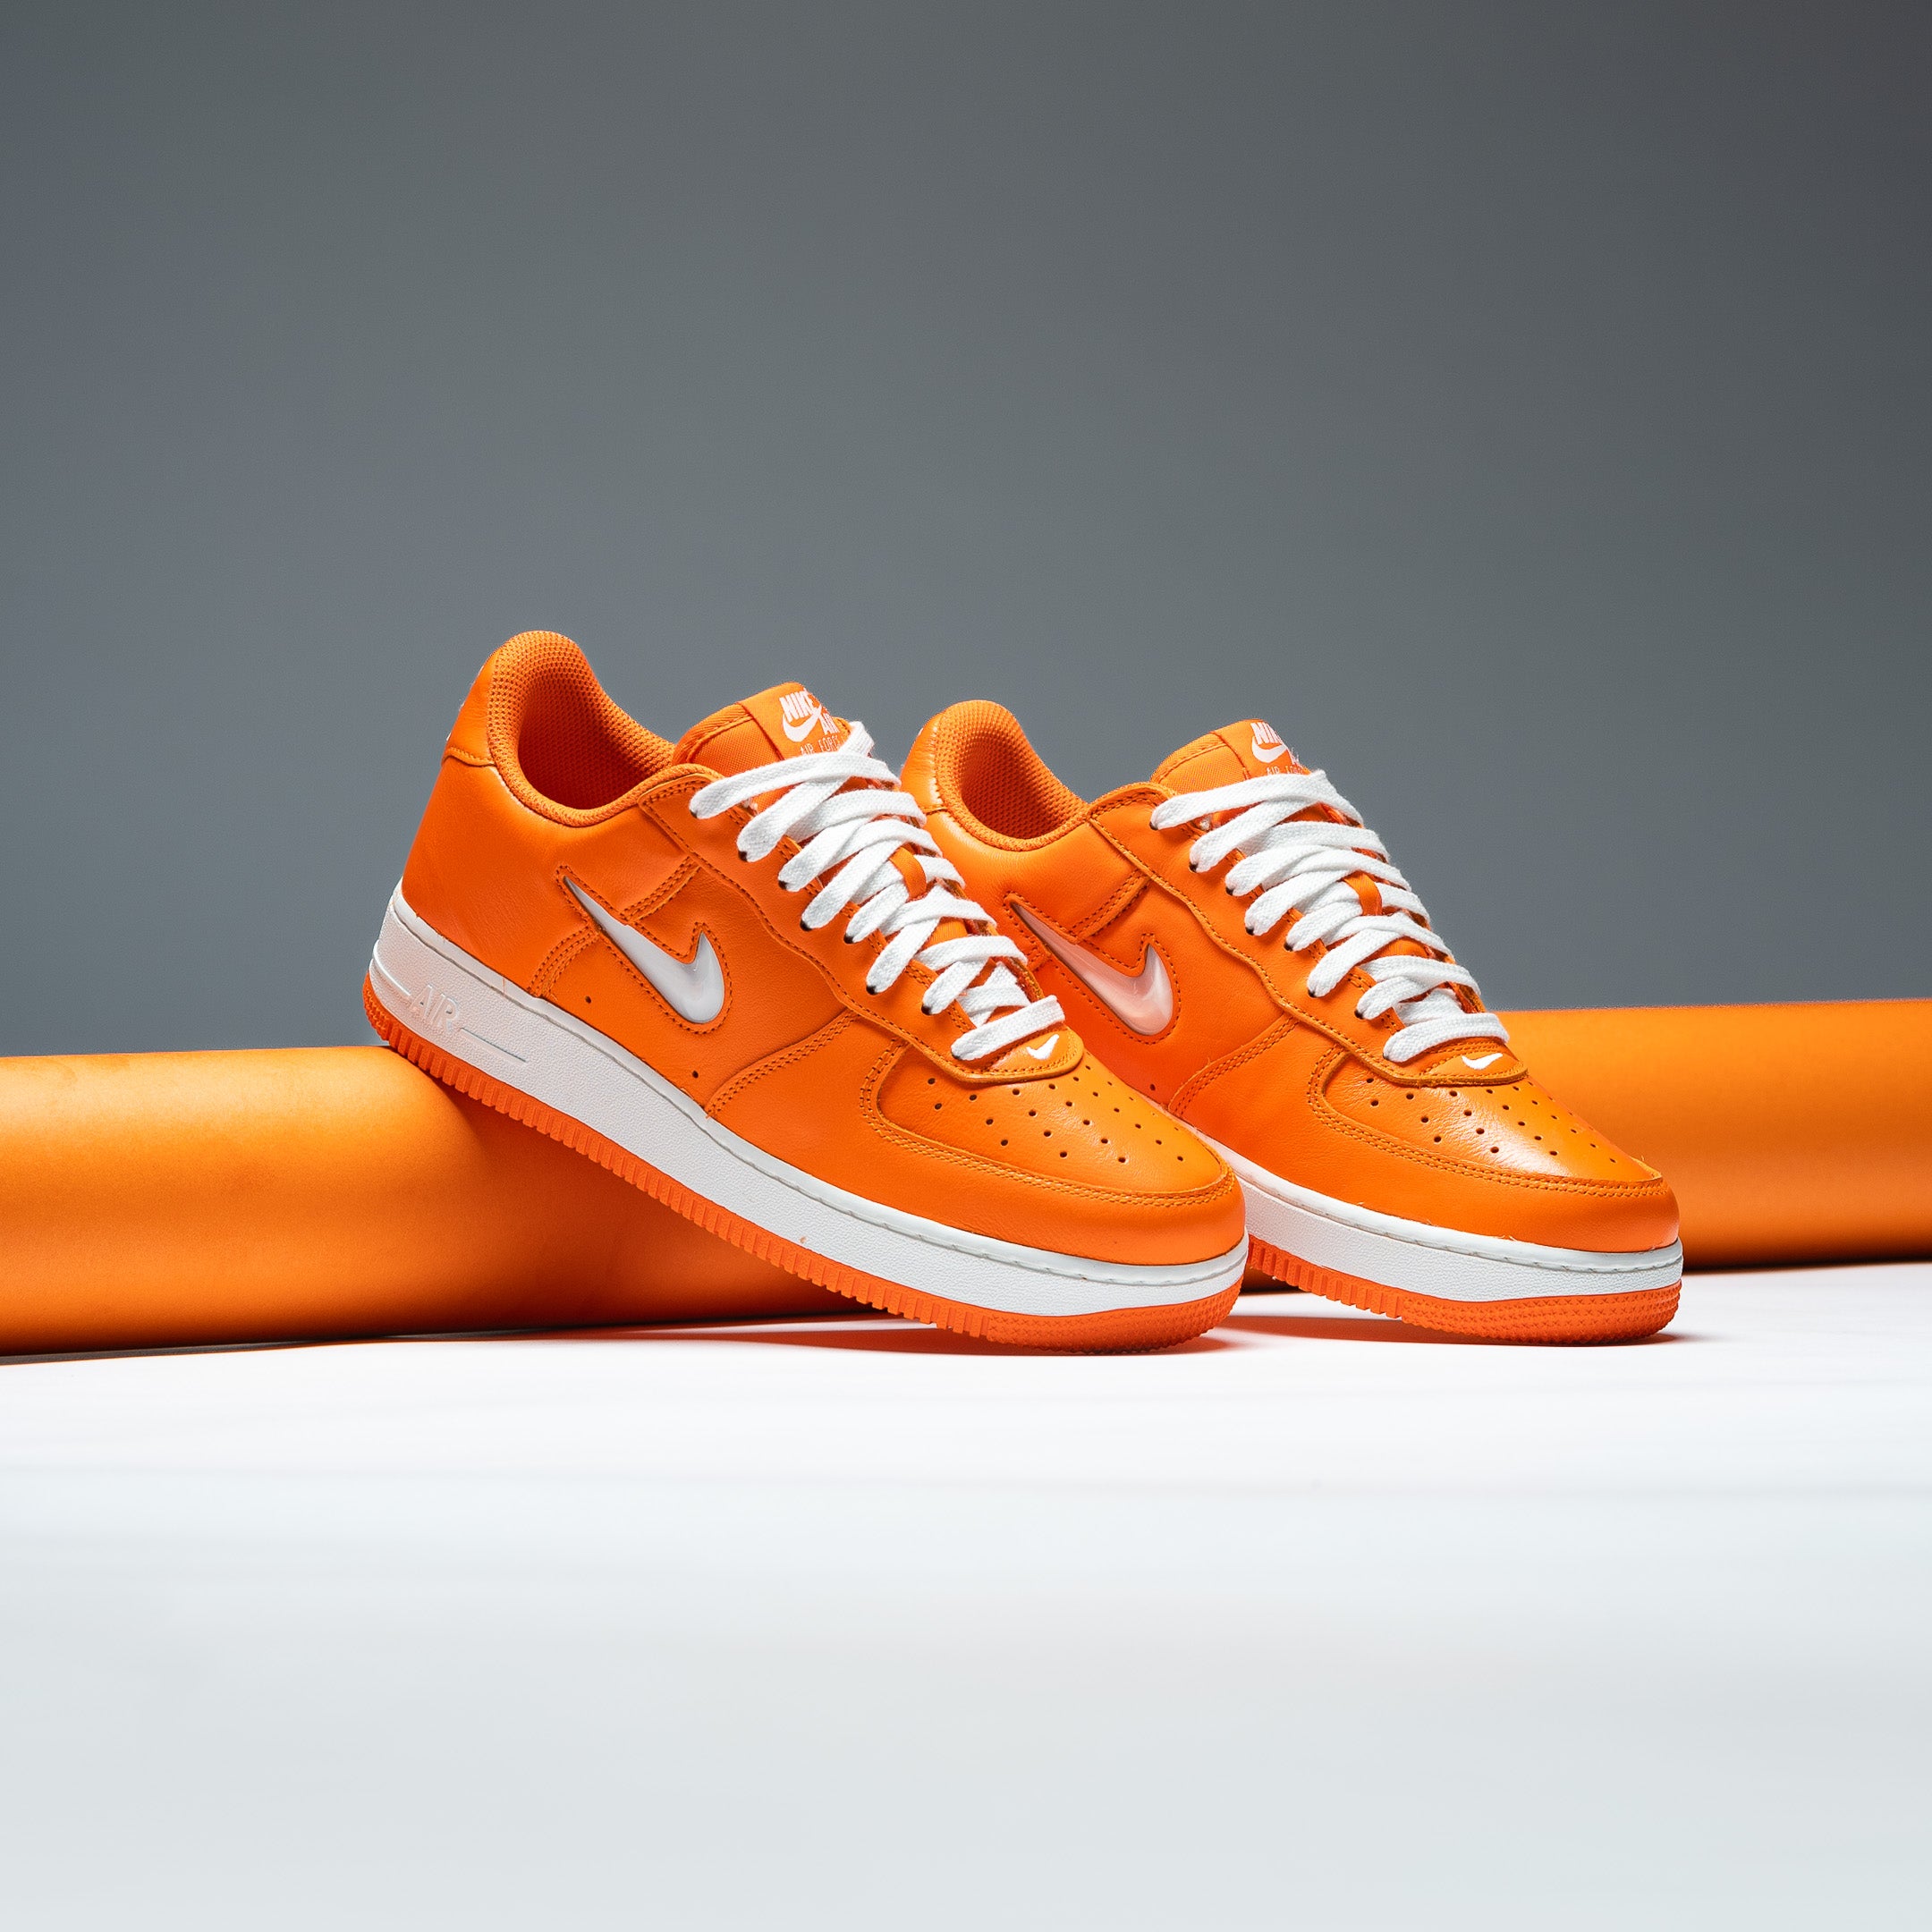 Nike Toddler Force 1 Low SE Vivid Orange/Summit White-Gridiron